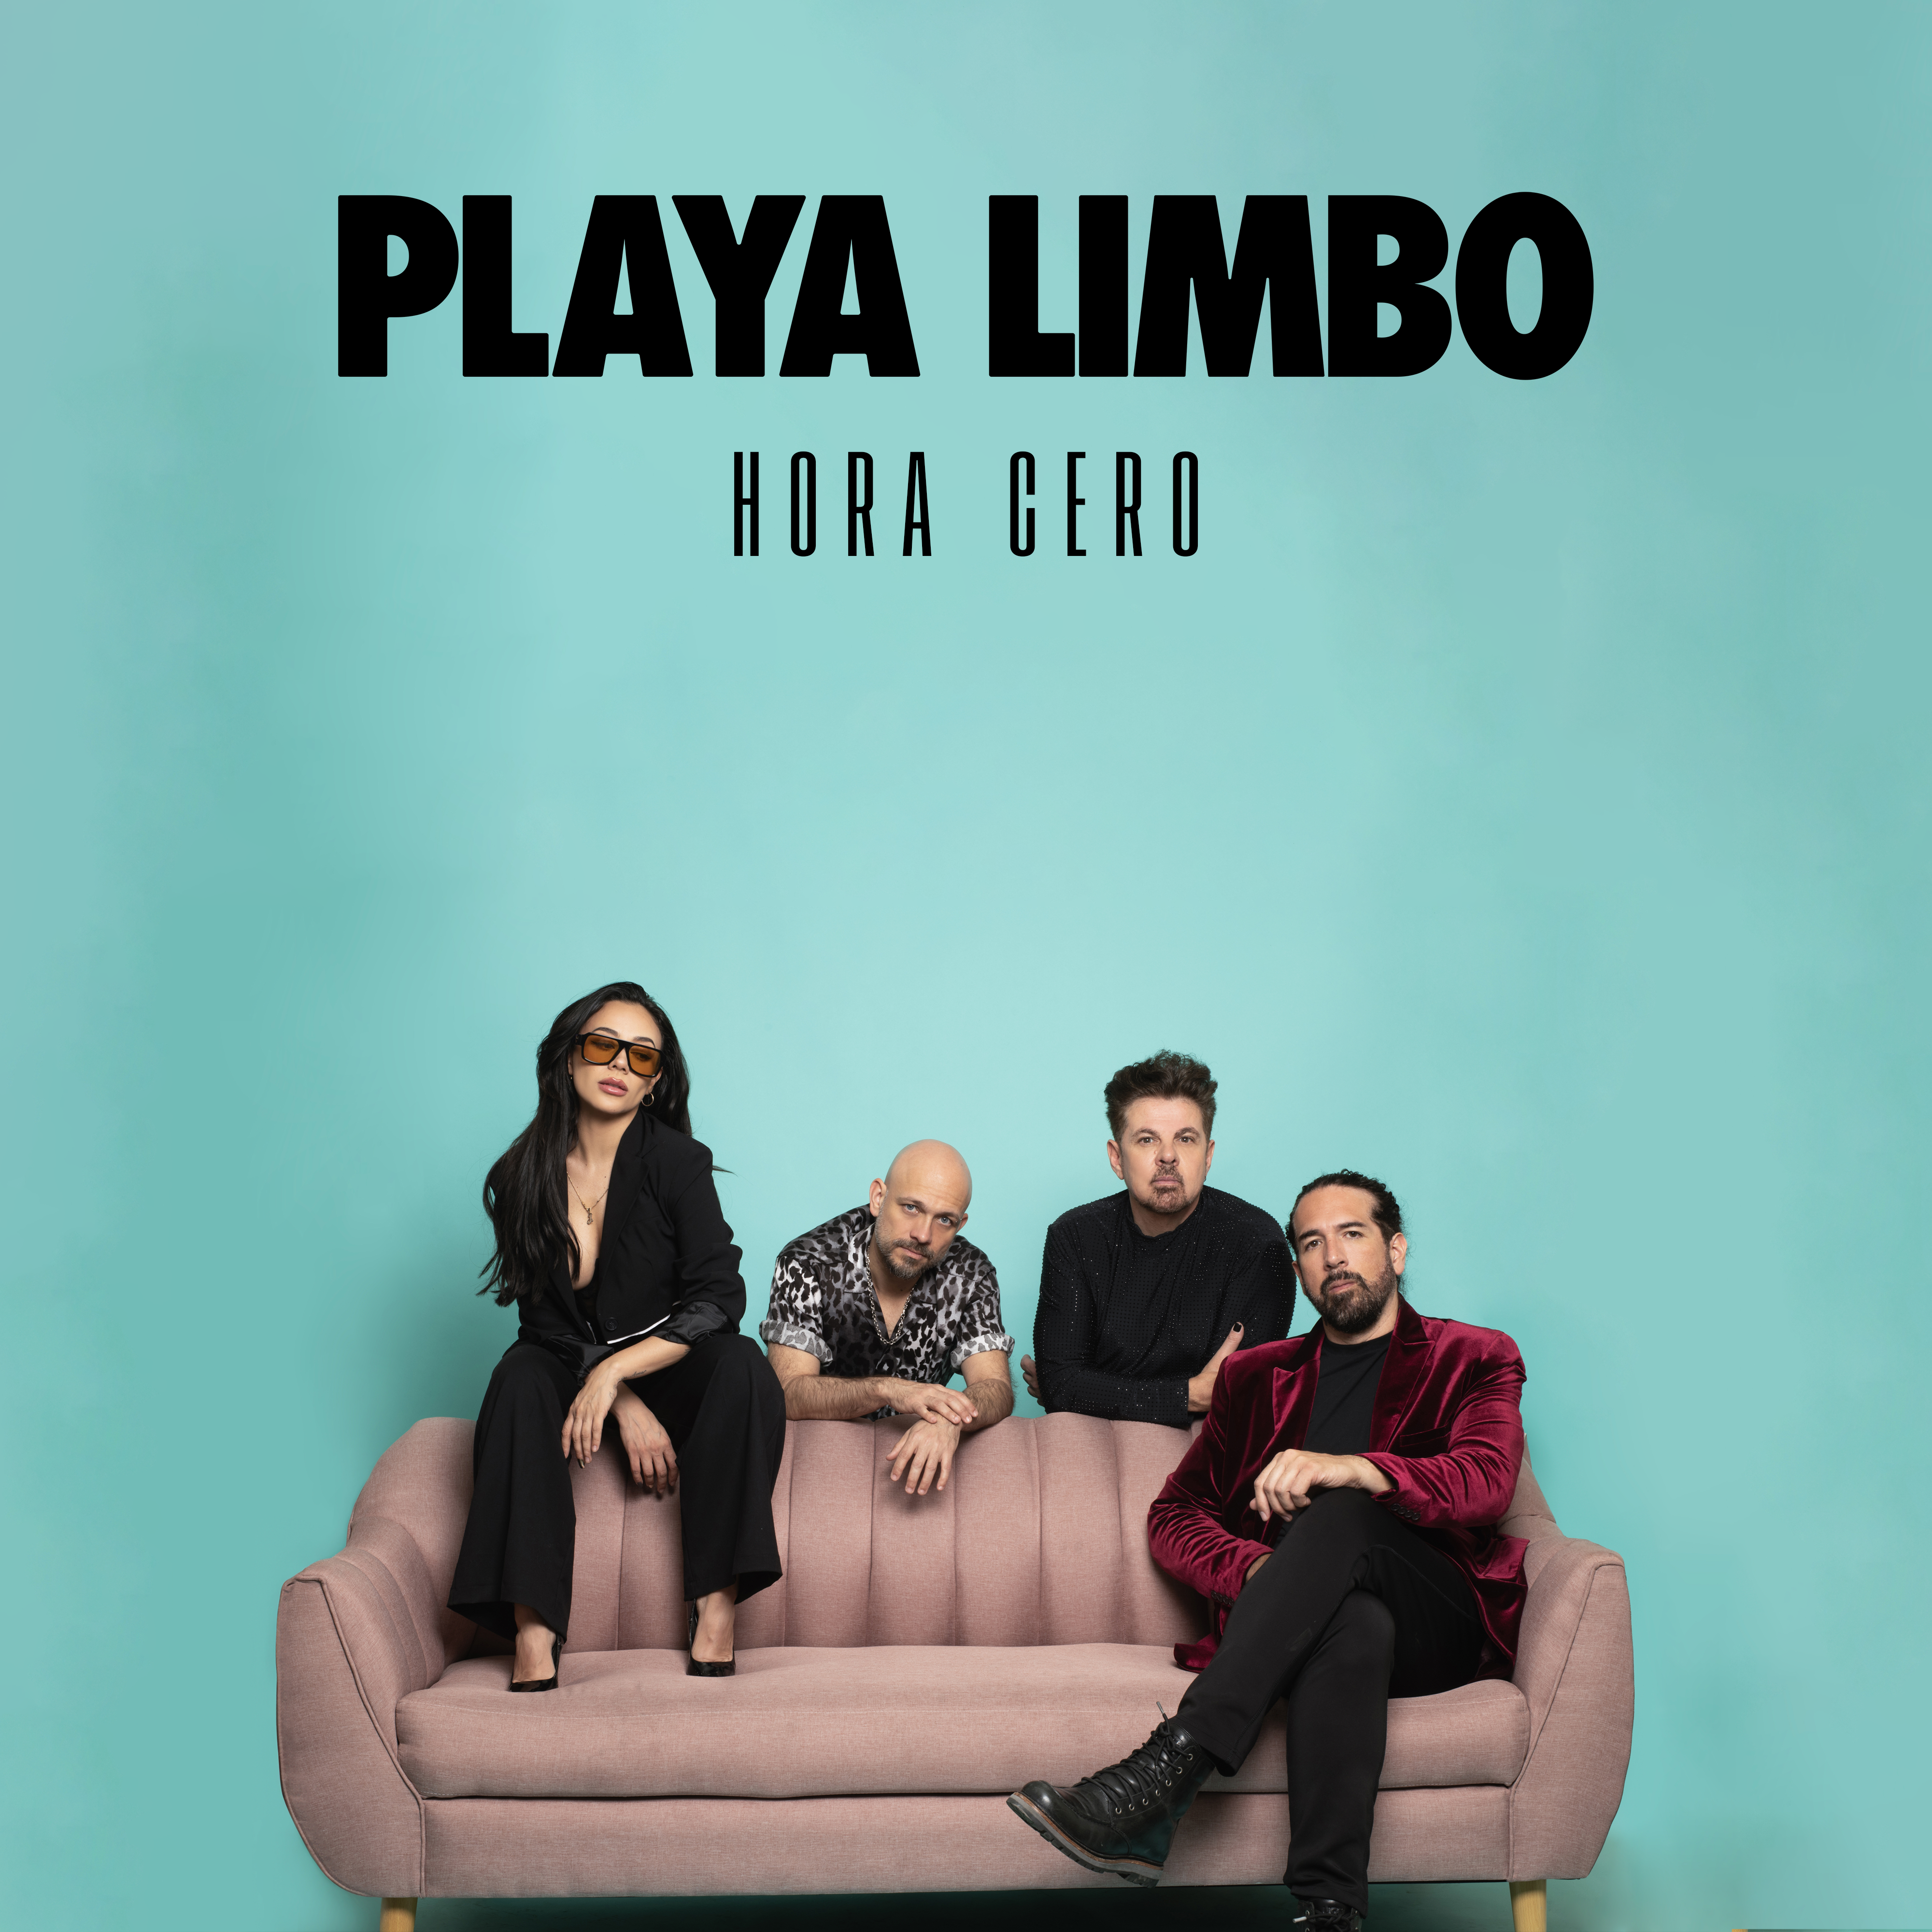 Playa Limbo estrena Álbum titulado “Hora Cero” y su nuevo sencillo “Tu”.